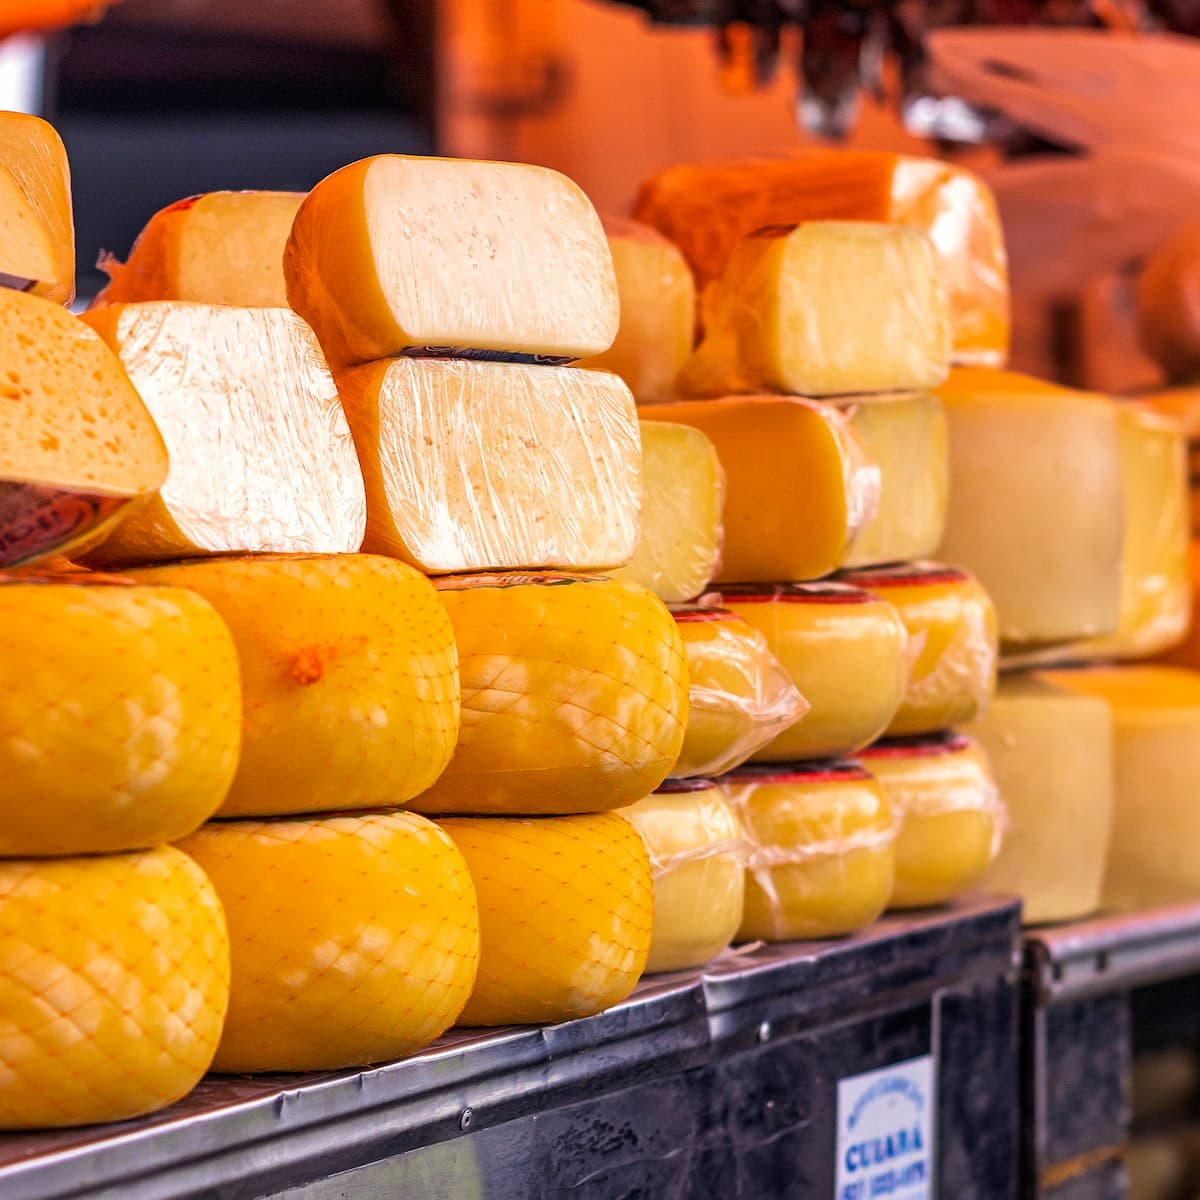 Imagem meramente ilustrativa de queijos, produzidos em uma Queijaria. الصور: Leandro Bezerra.